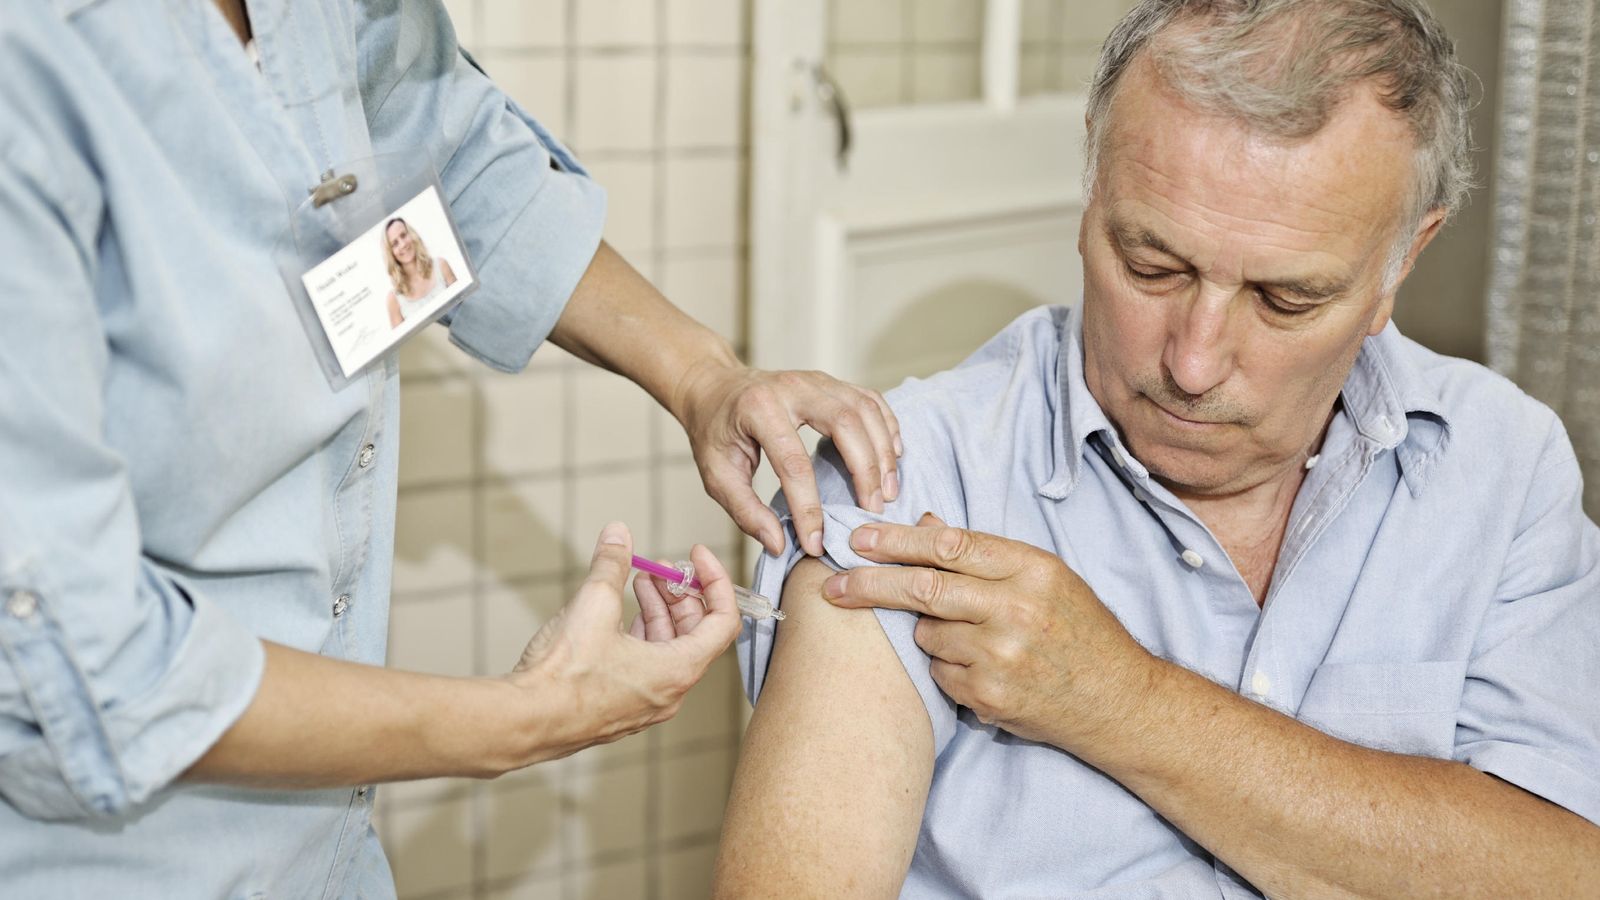 Foto: Sanidad recomienda a todos los mayores de 65 años que se vacunen contra la gripe. (iStock)